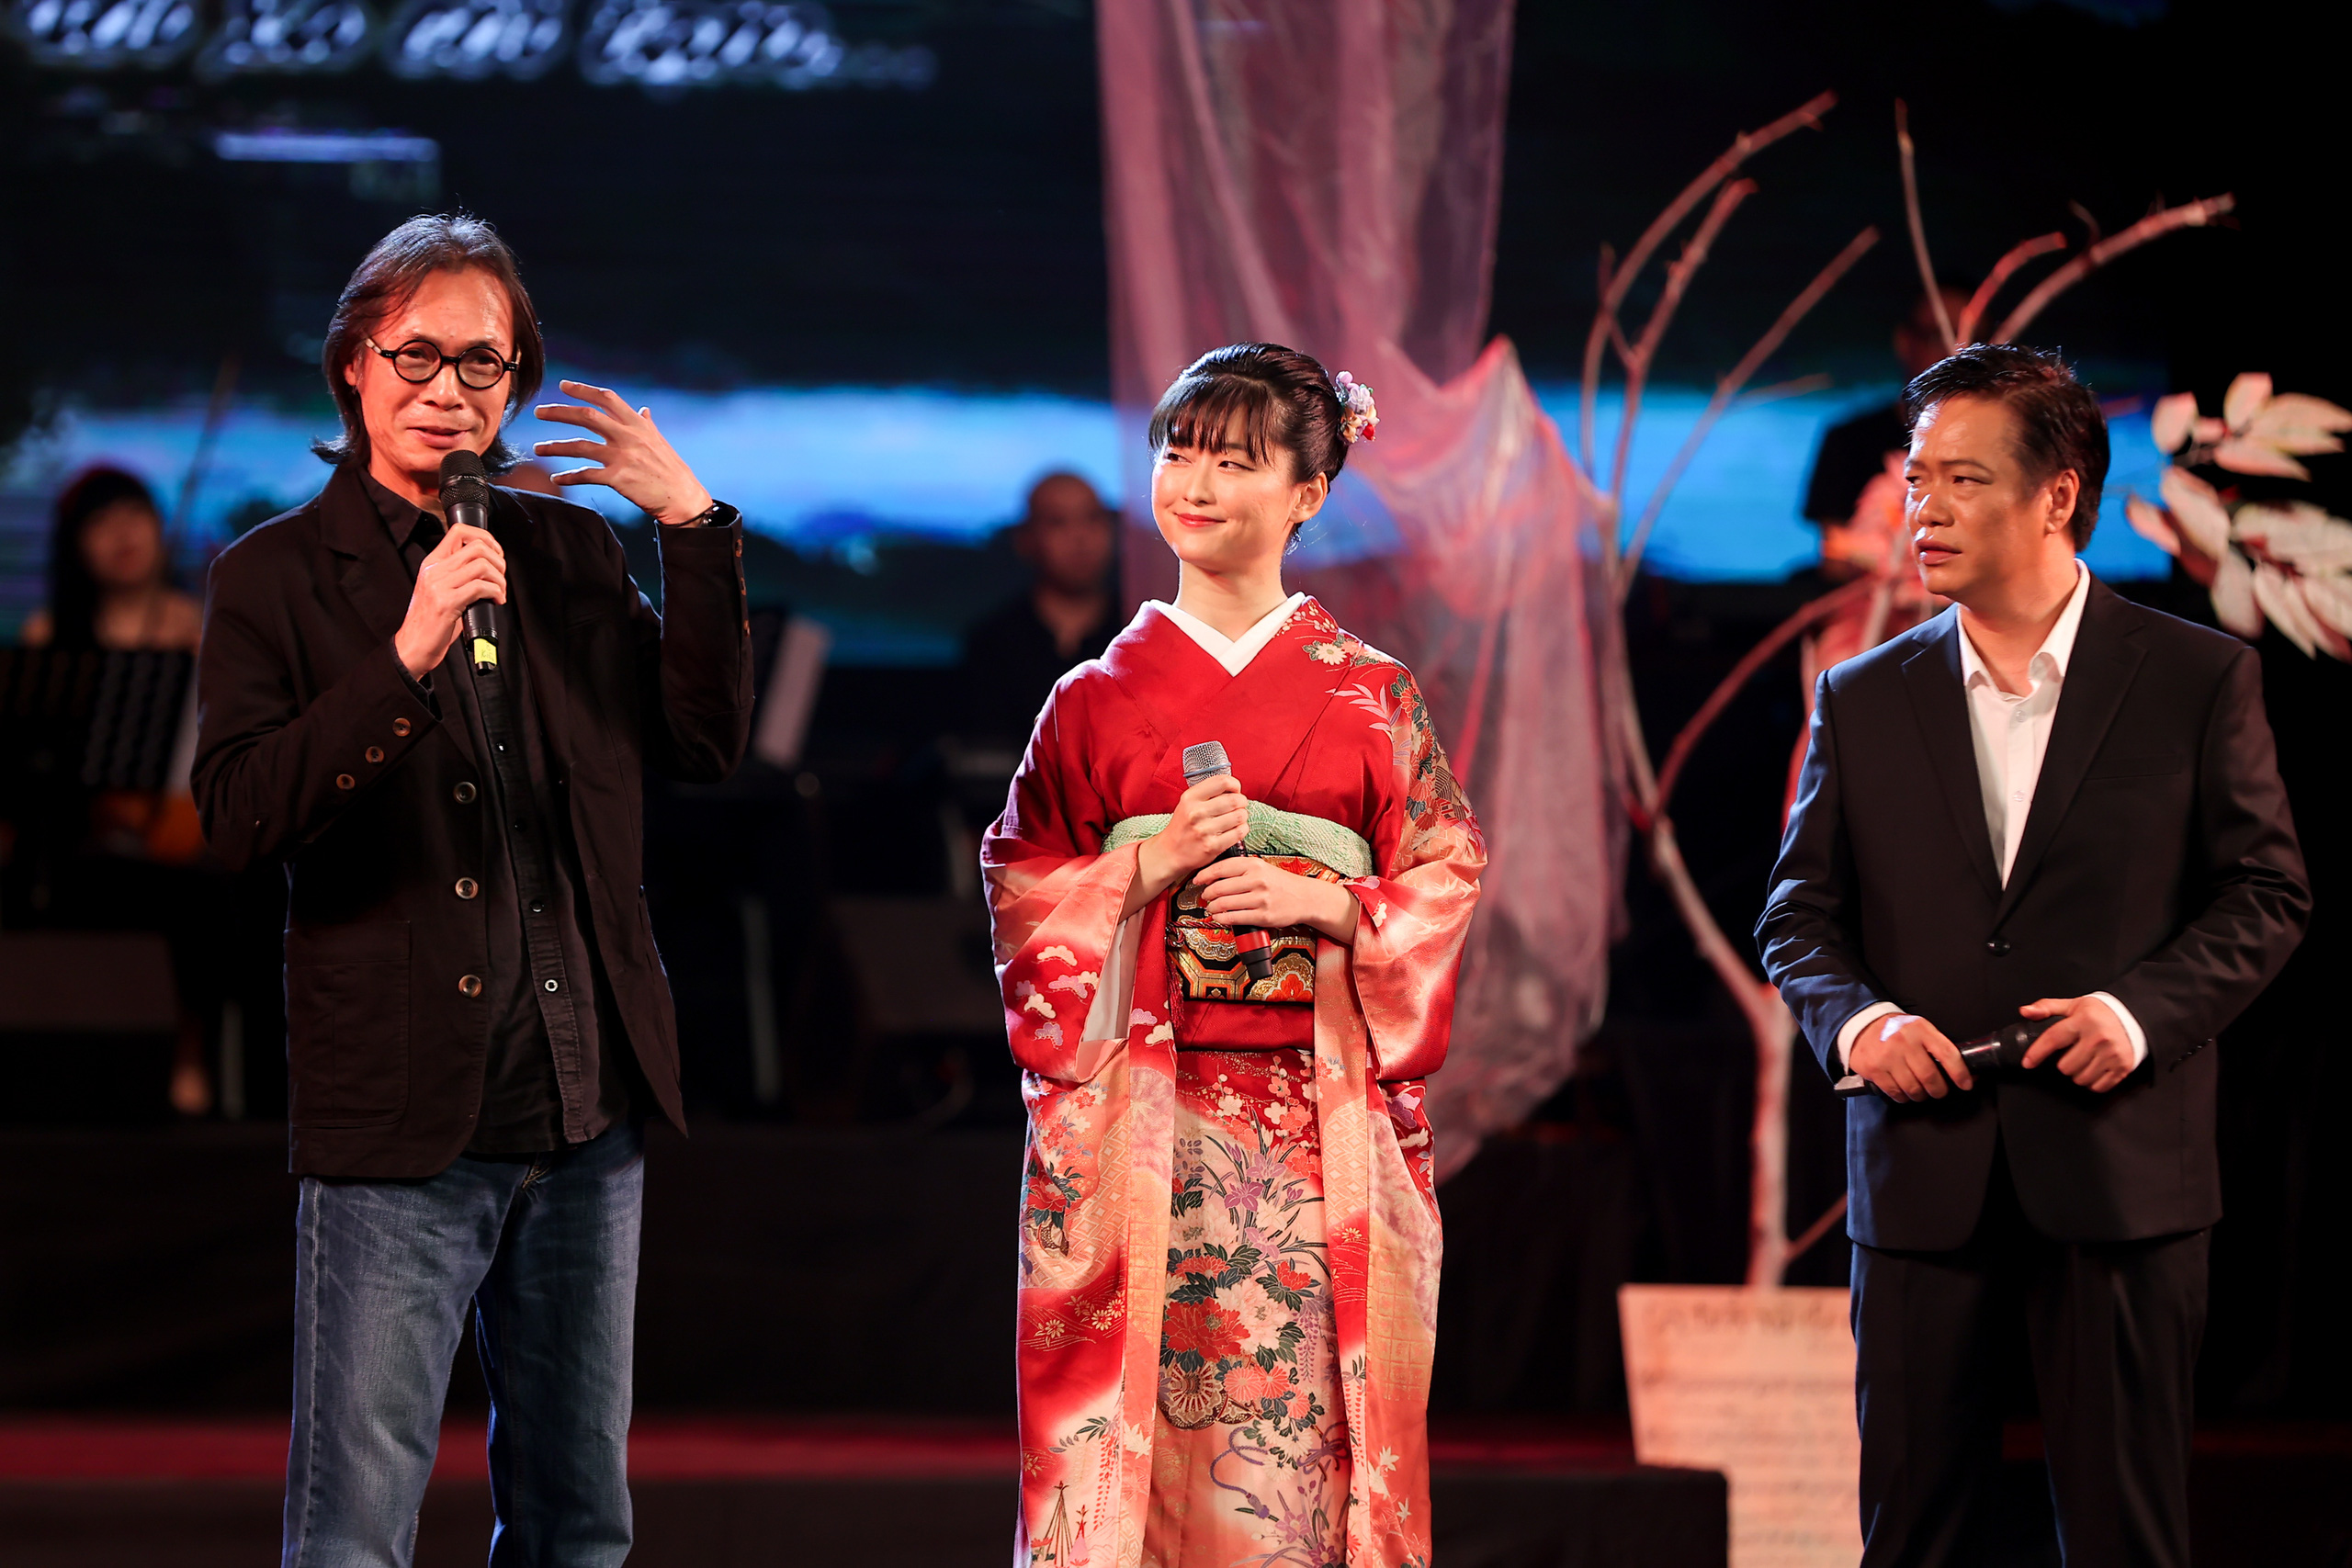 Muôn vàn cảm xúc trong đêm nhạc 'Xin mặt trời ngủ yên'  Tưởng nhớ 20 năm ngày nhạc sĩ Trịnh Công Sơn rời cõi tạm  - Ảnh 11.